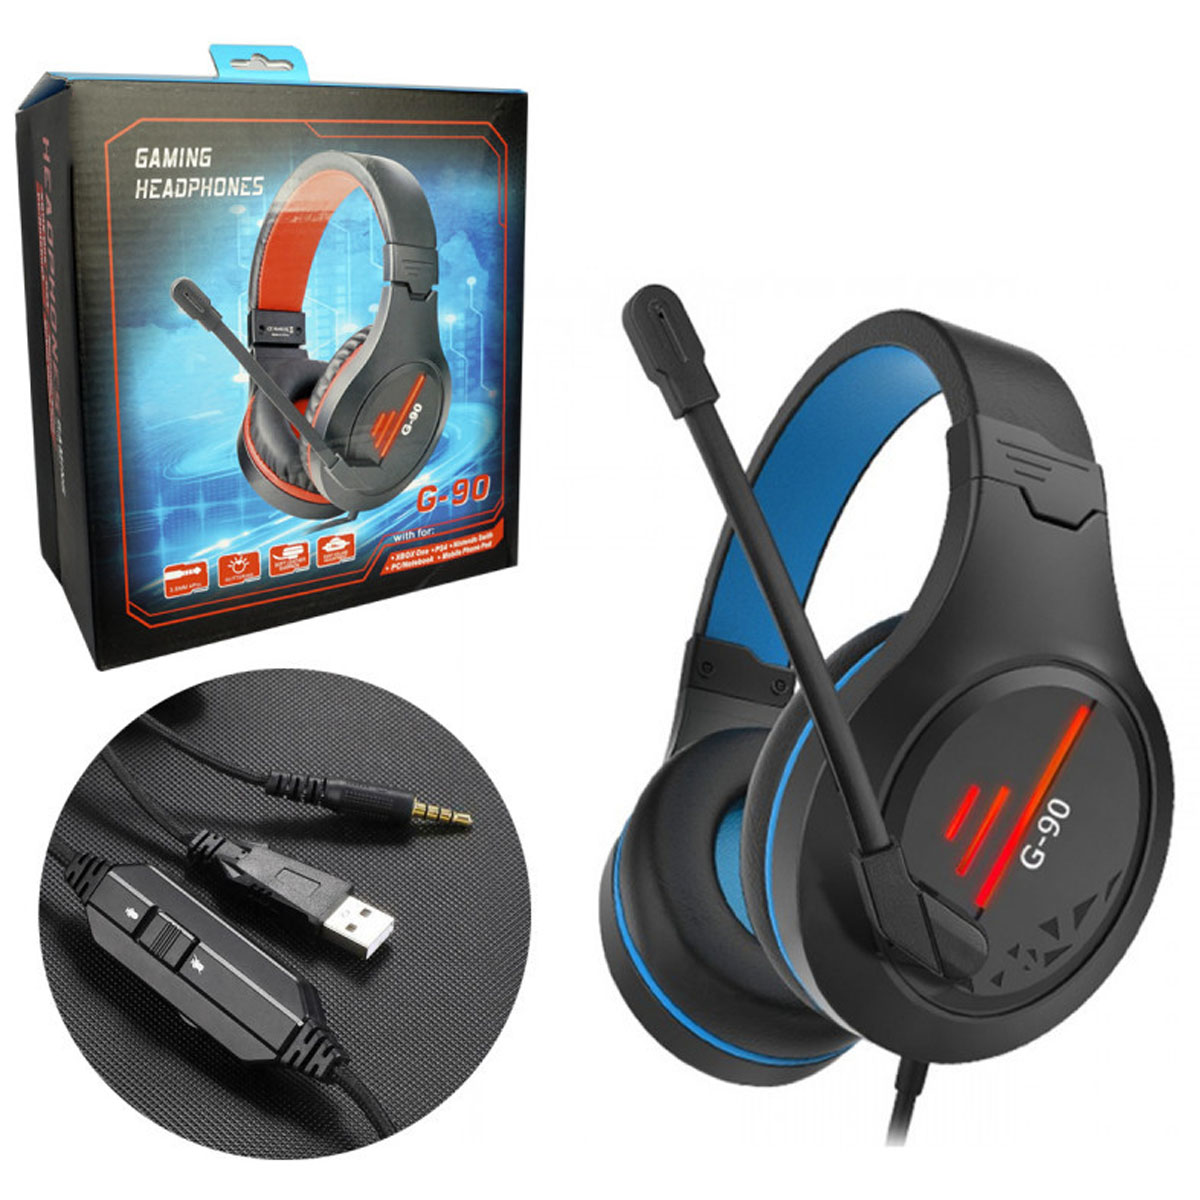 Игровая гарнитура (наушники с микрофоном) проводная, полноразмерная, GAMING HEADPHONES G-90, подсветка, цвет черно синий